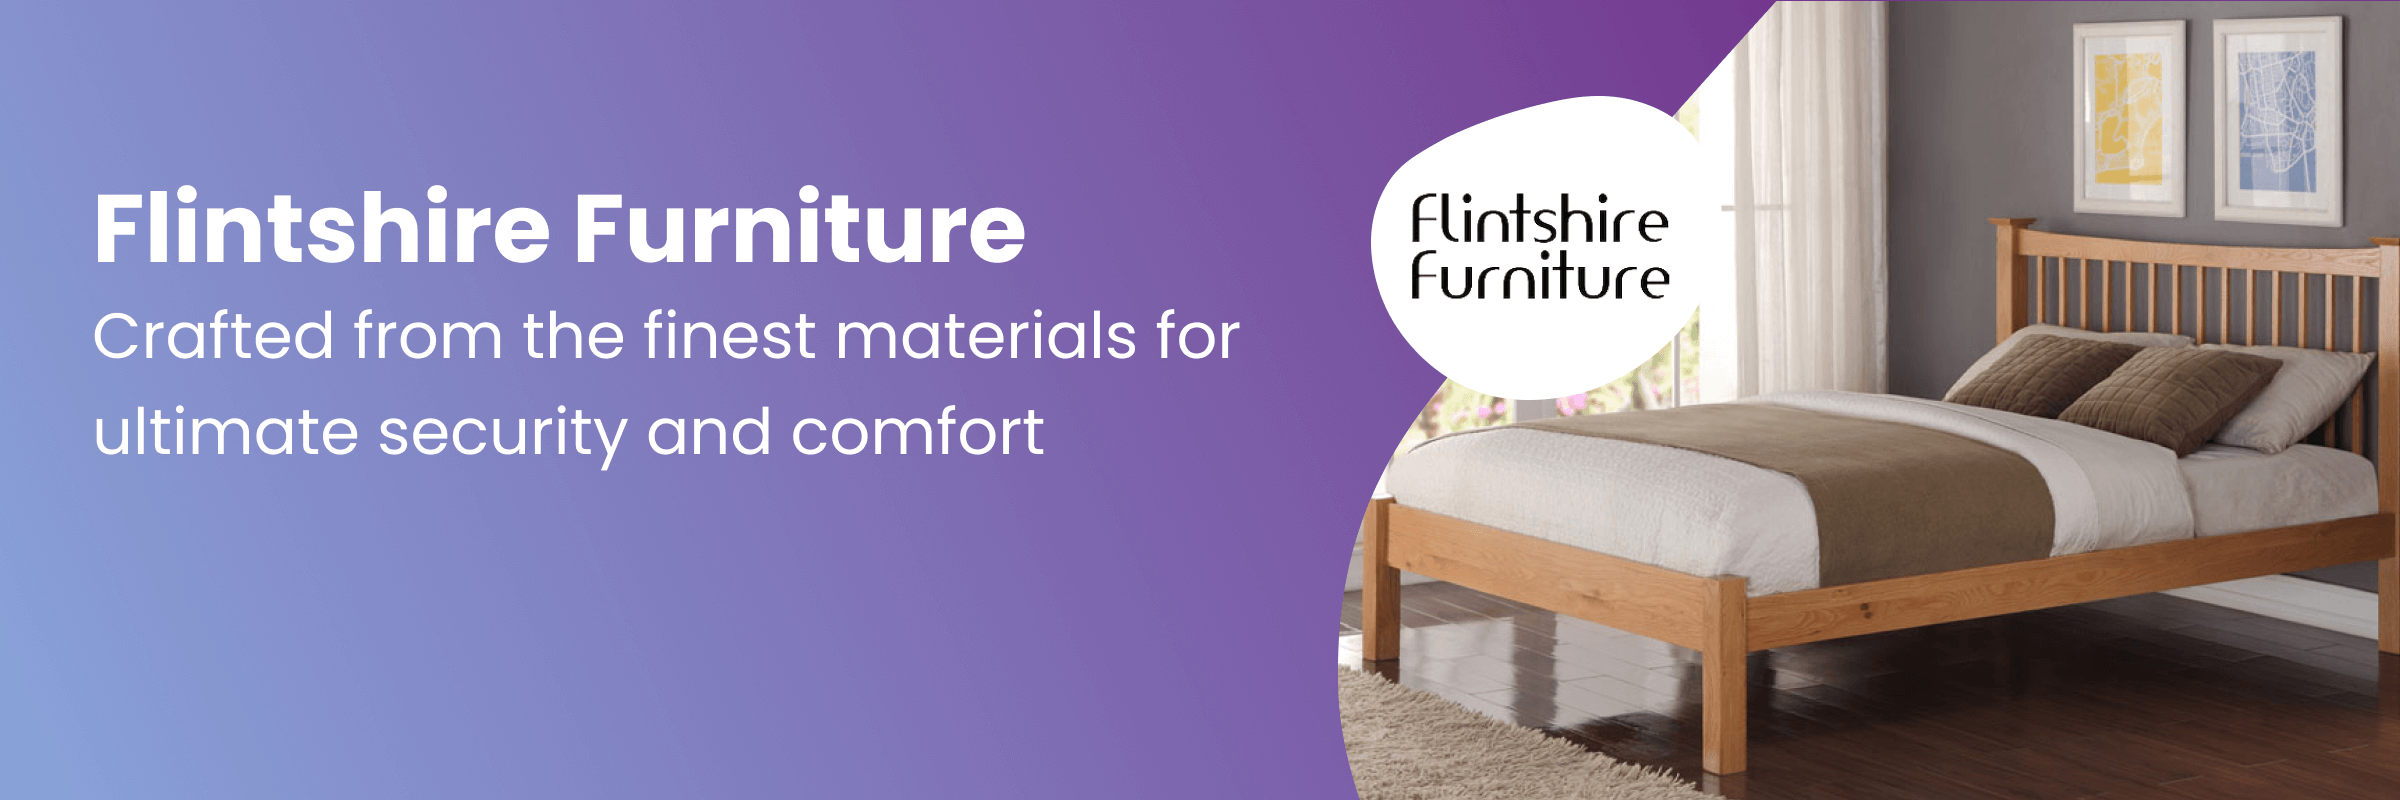 Flintshire Furniture at Mattress Online.